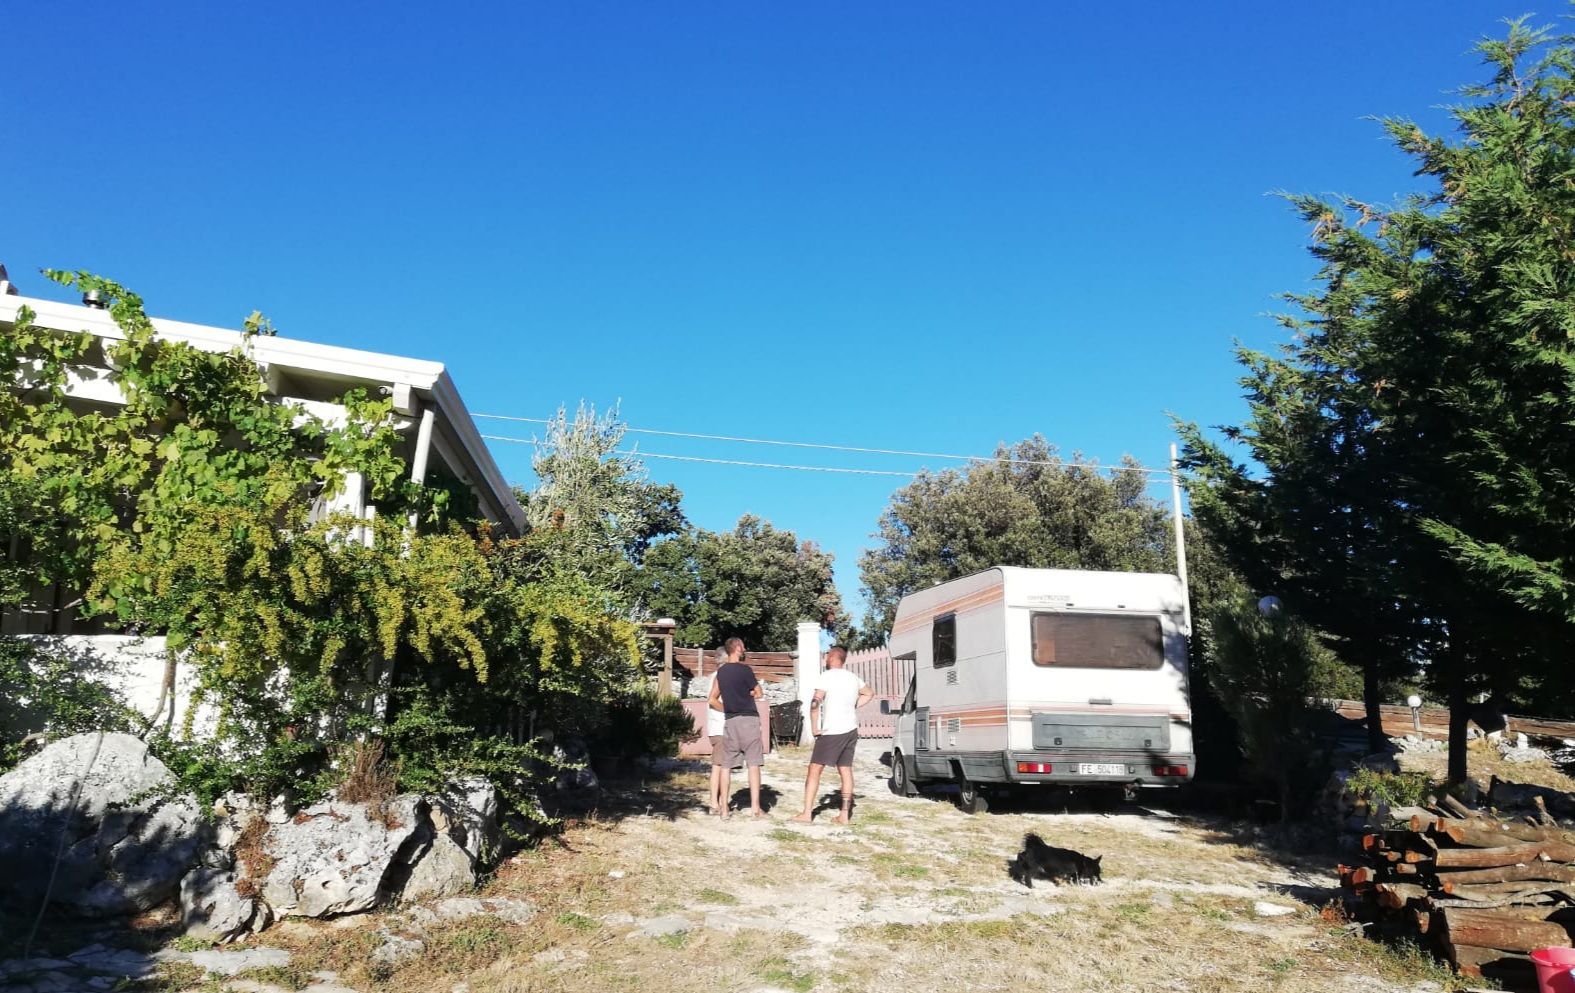 Refugio Camping del Fauno